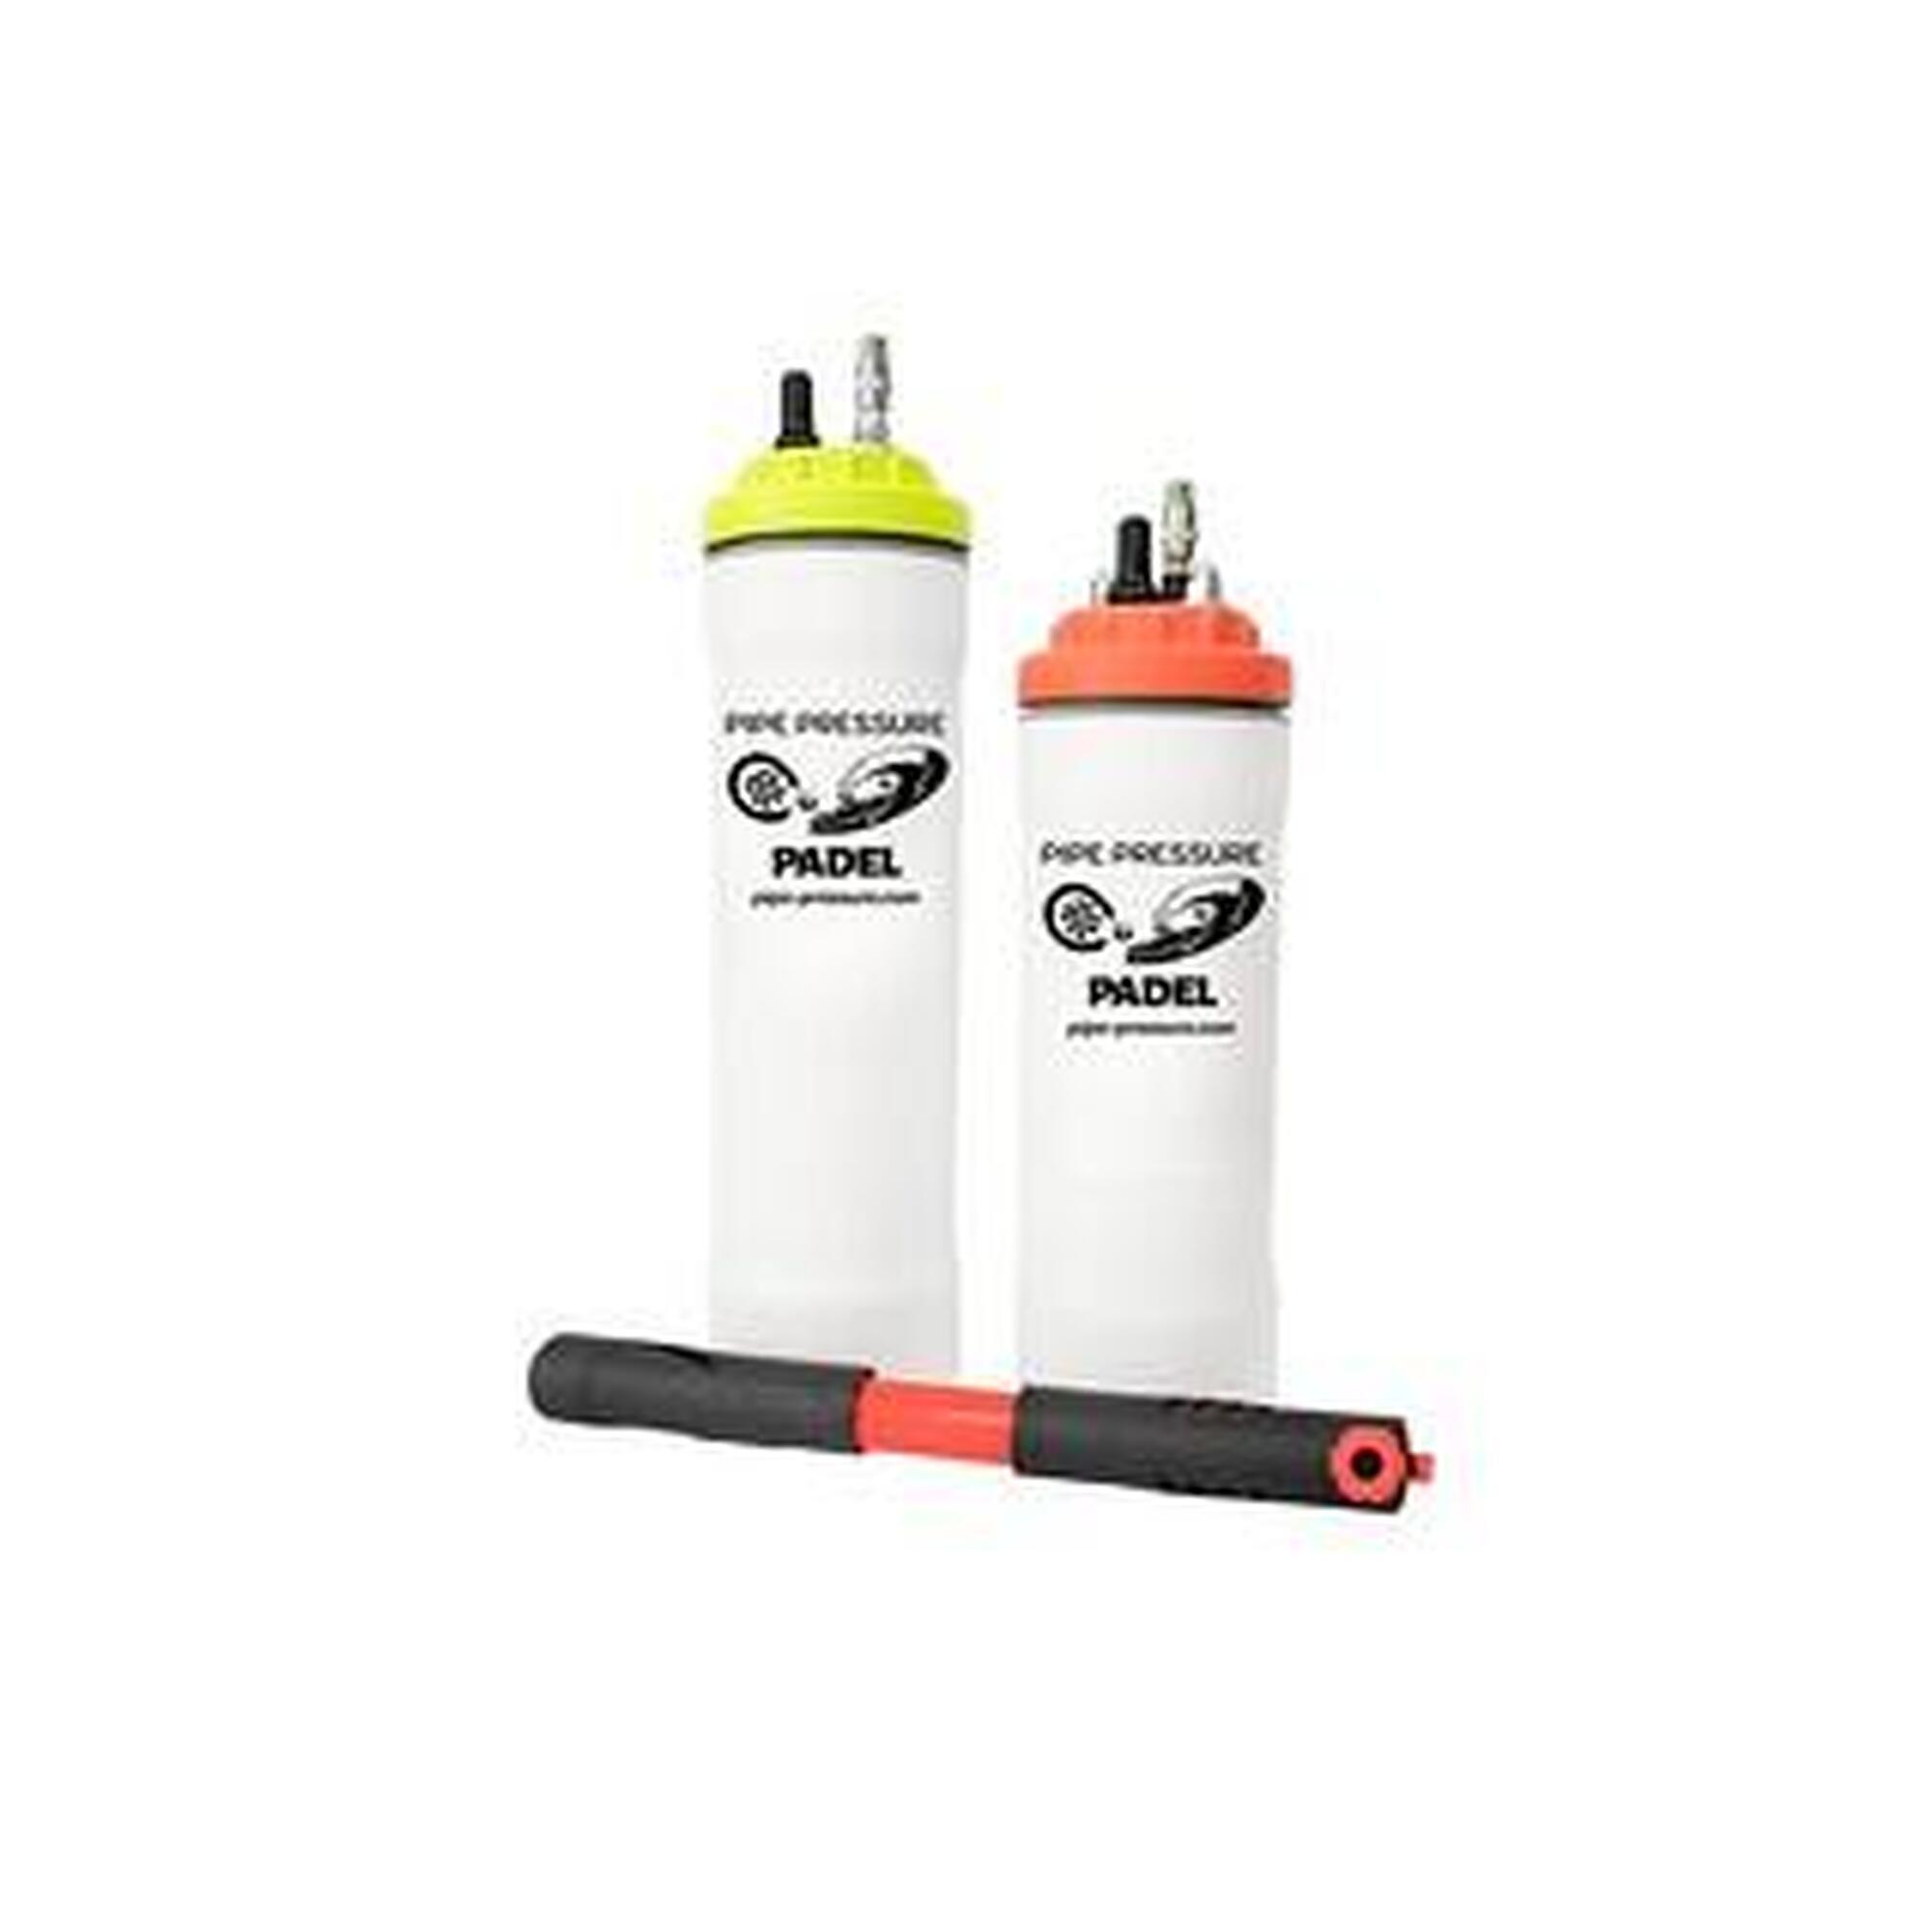 Pressurizzatore per padel e palline da tennis(4 palline con pompa)-colore giallo